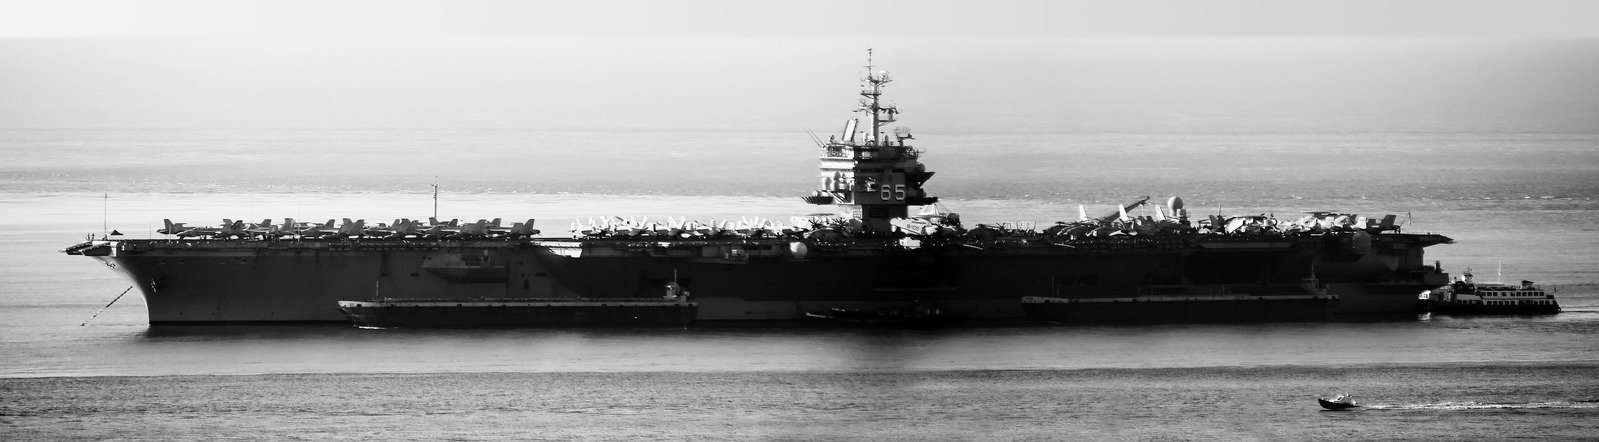 Aircraft carrier USS Enterprise